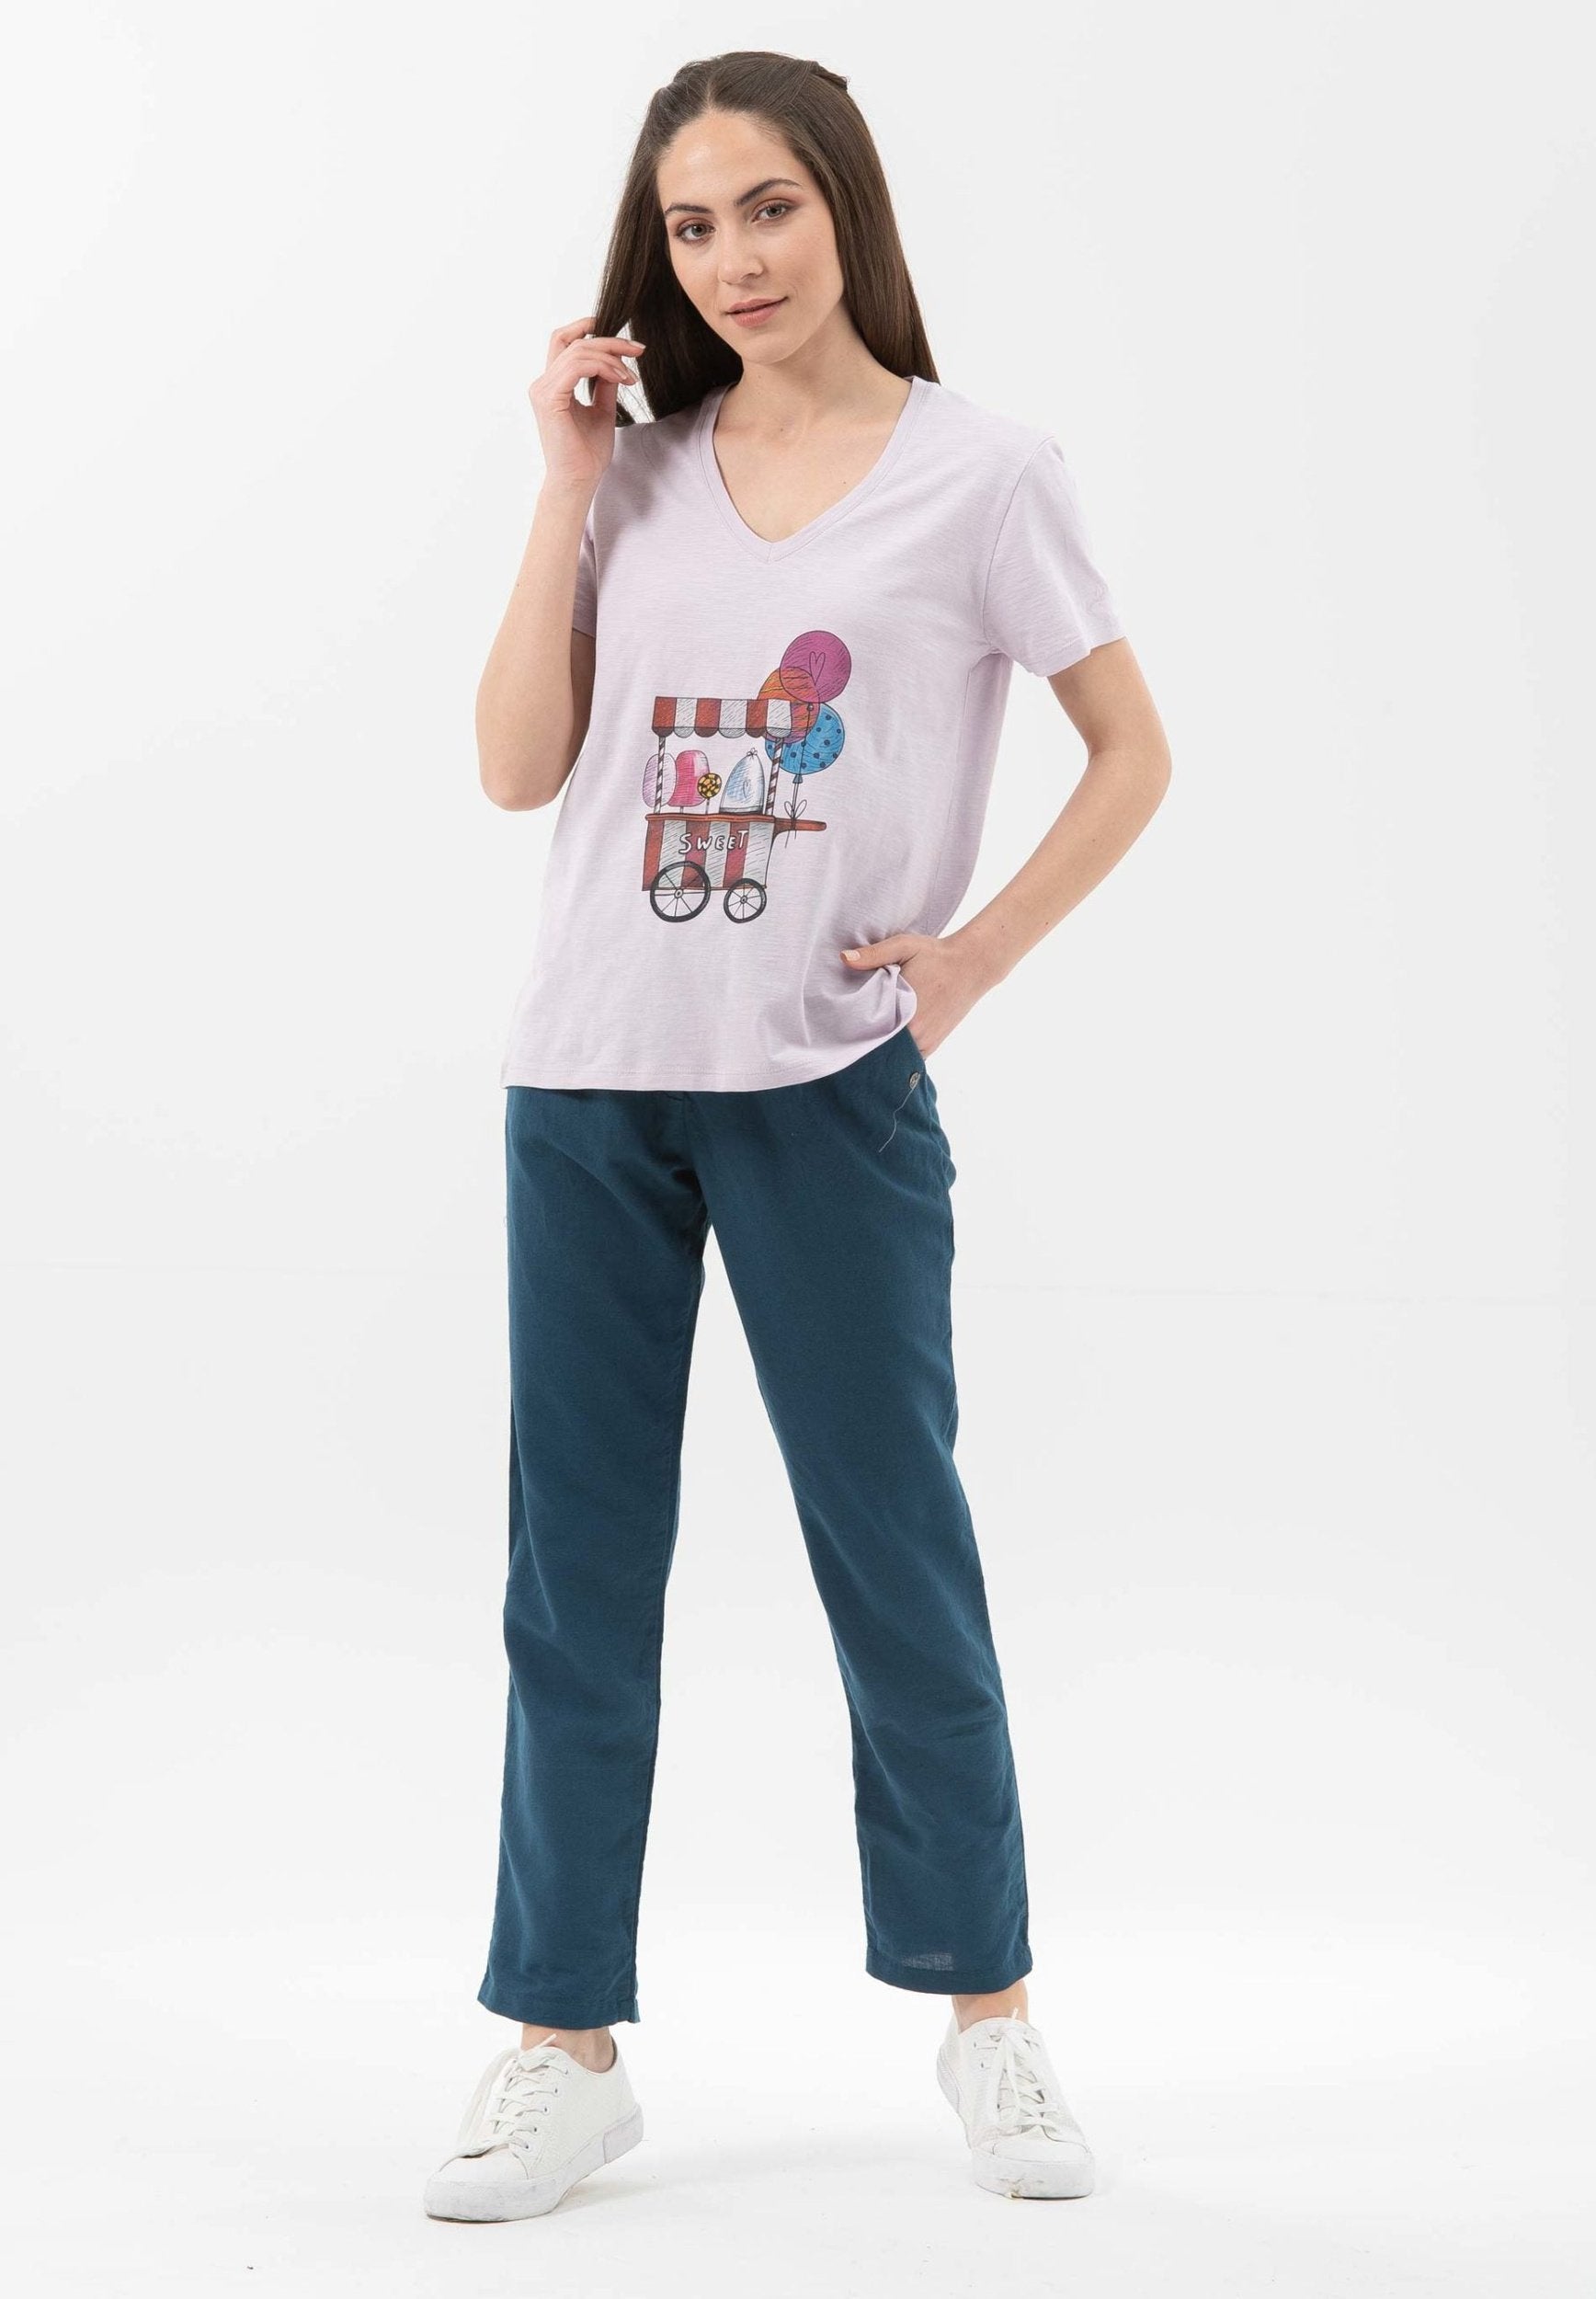 T-Shirt aus Bio-Baumwolle mit V-Ausschnitt